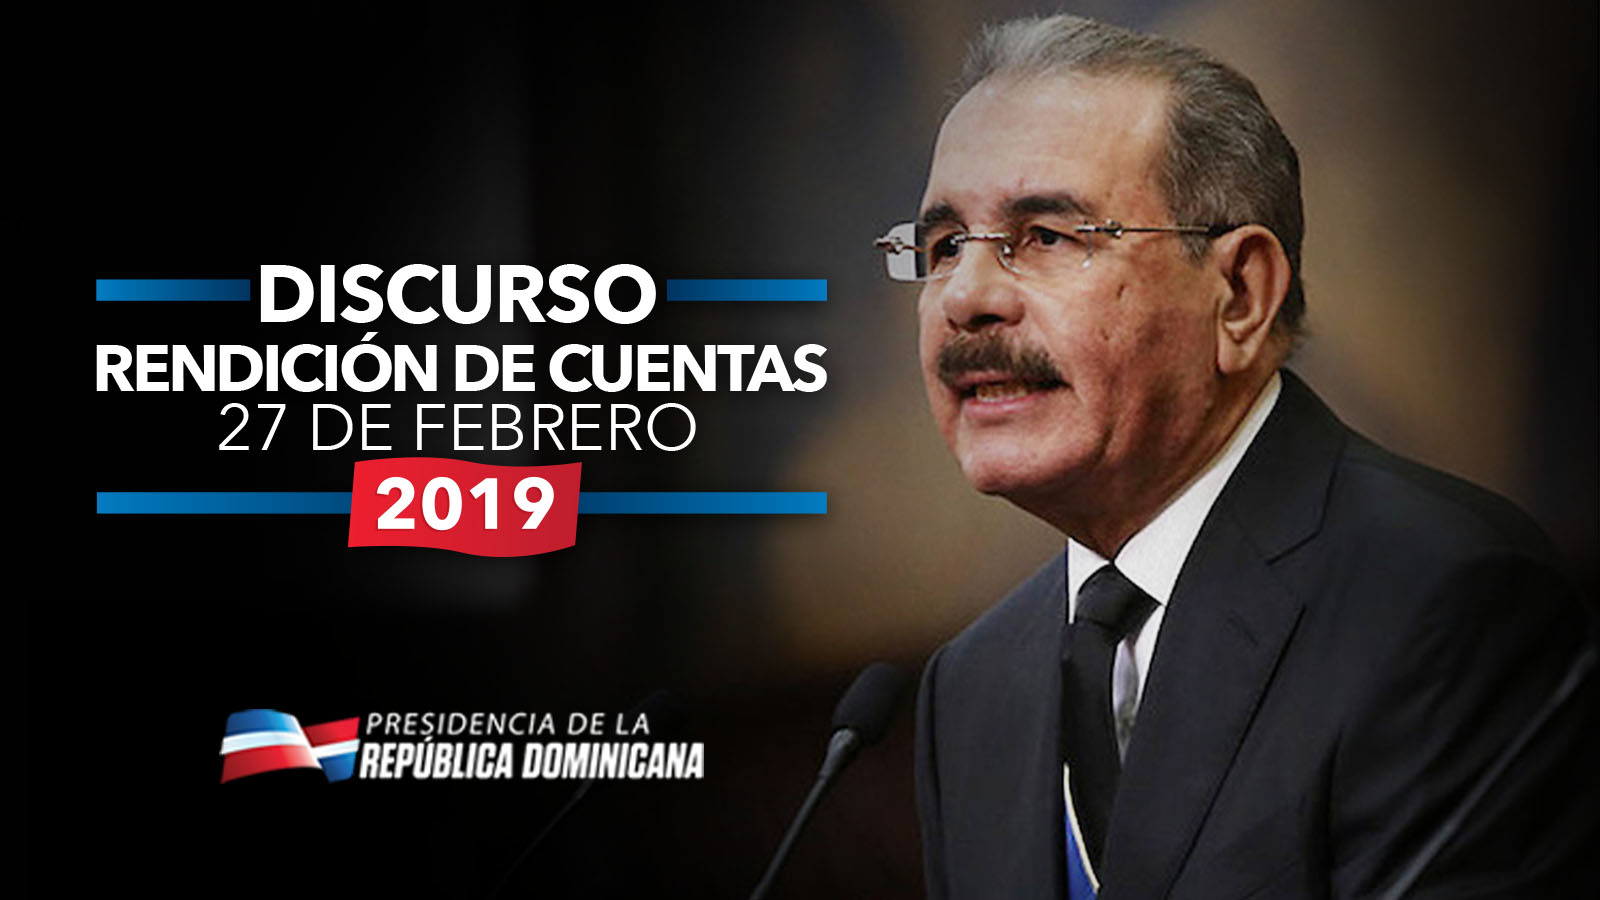 Discurso rendición cuentas de Danilo Medina será transmitido por 444 medios de comunicación